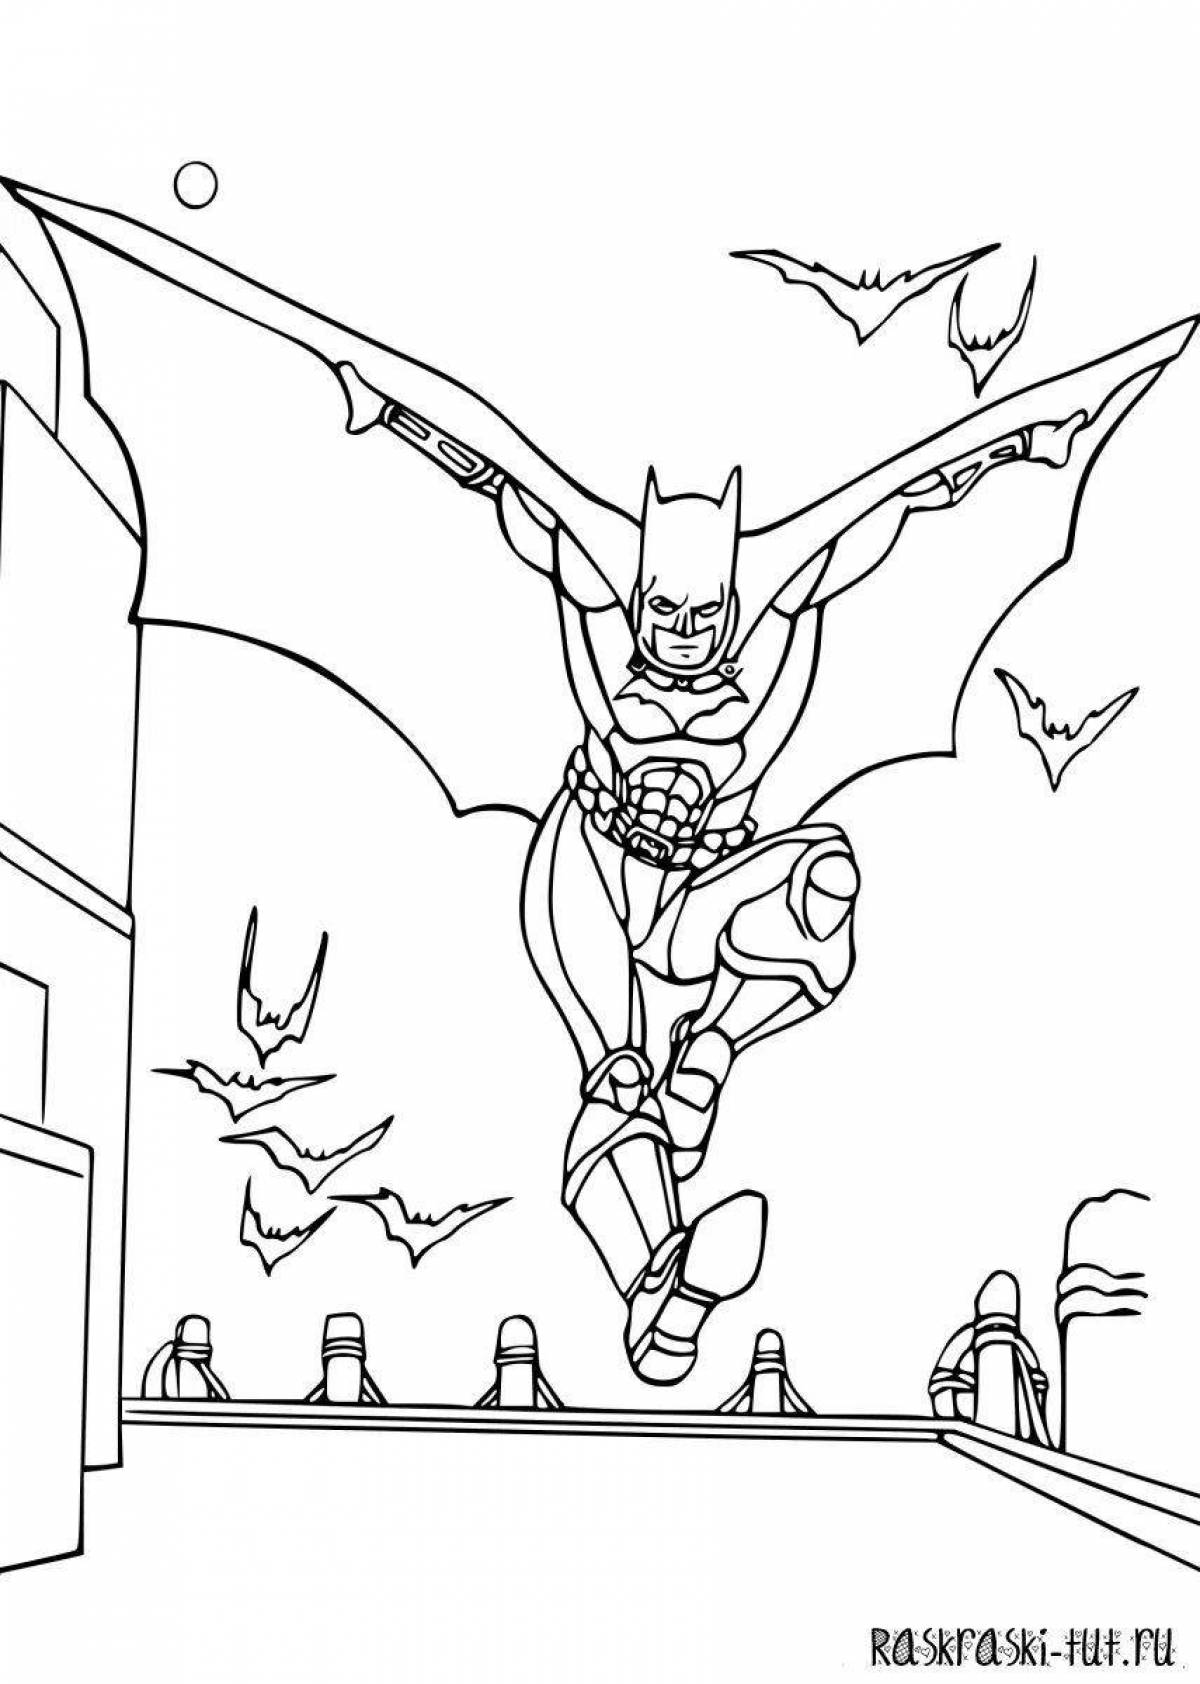 Fun coloring book batman for kids